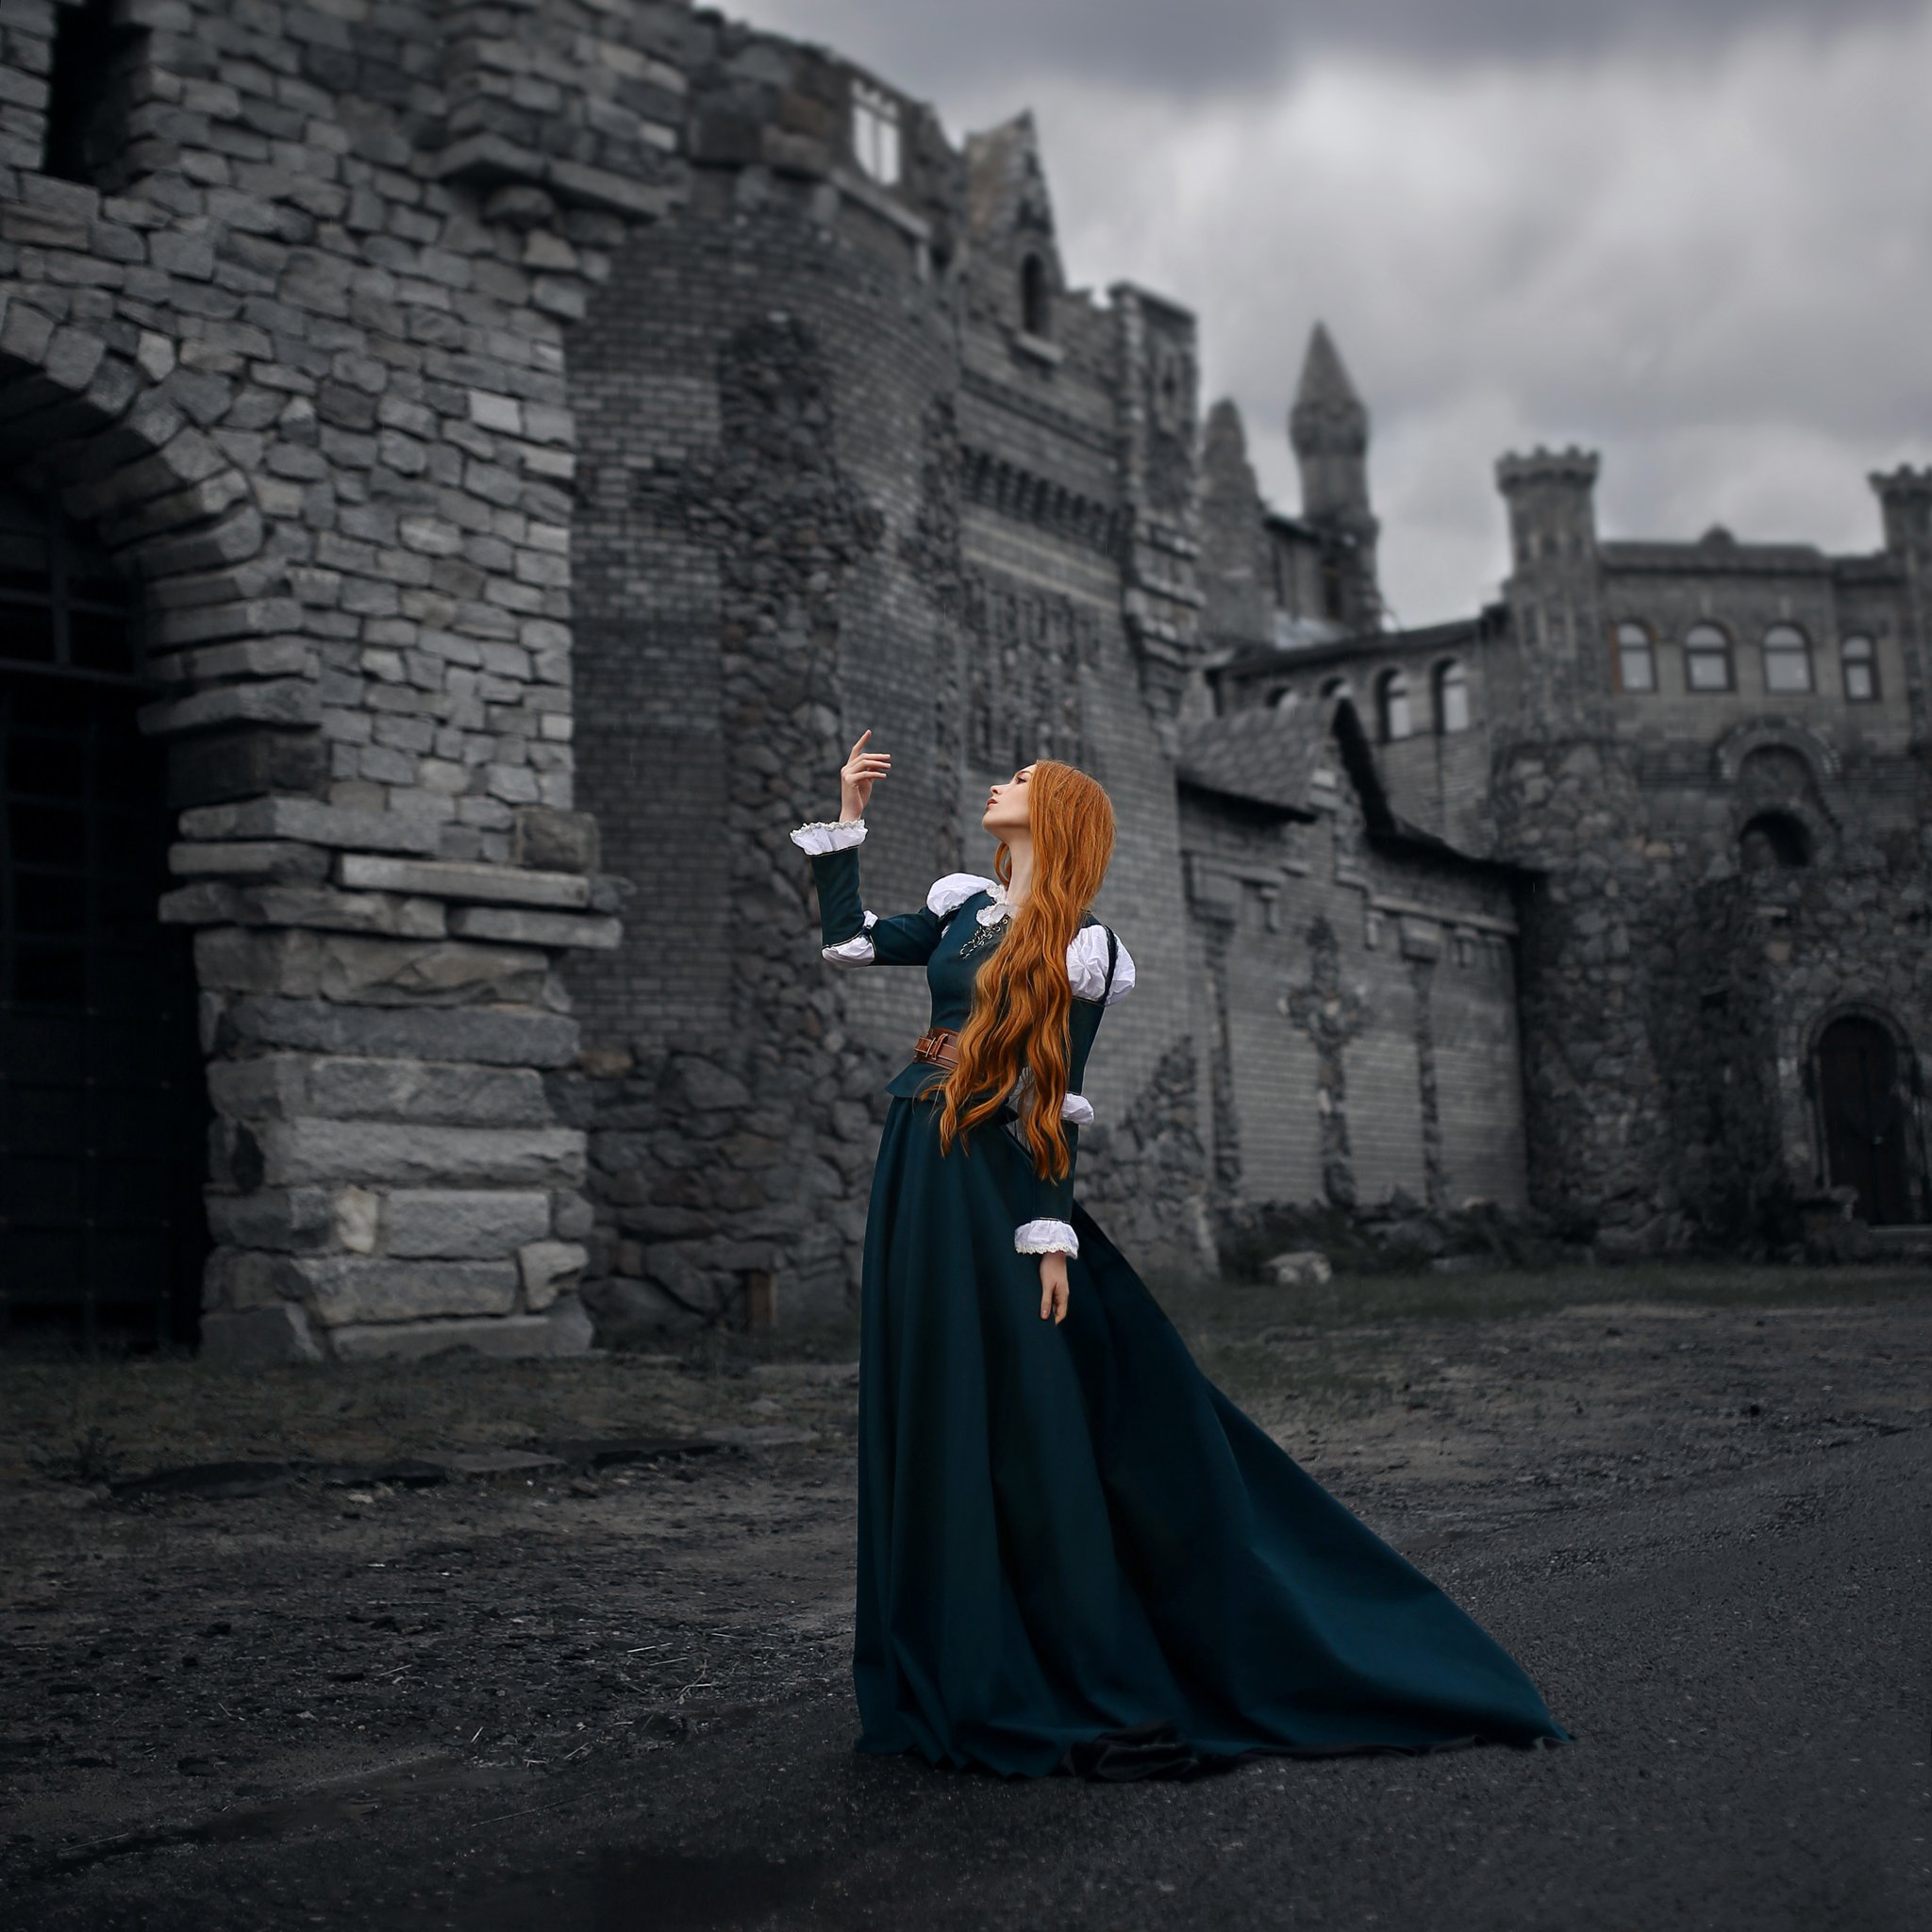 замок, Белгород, храброе сердце, рыжая девушка, историческое платье, девушка возле замка, средневековье , Ирина Голубятникова